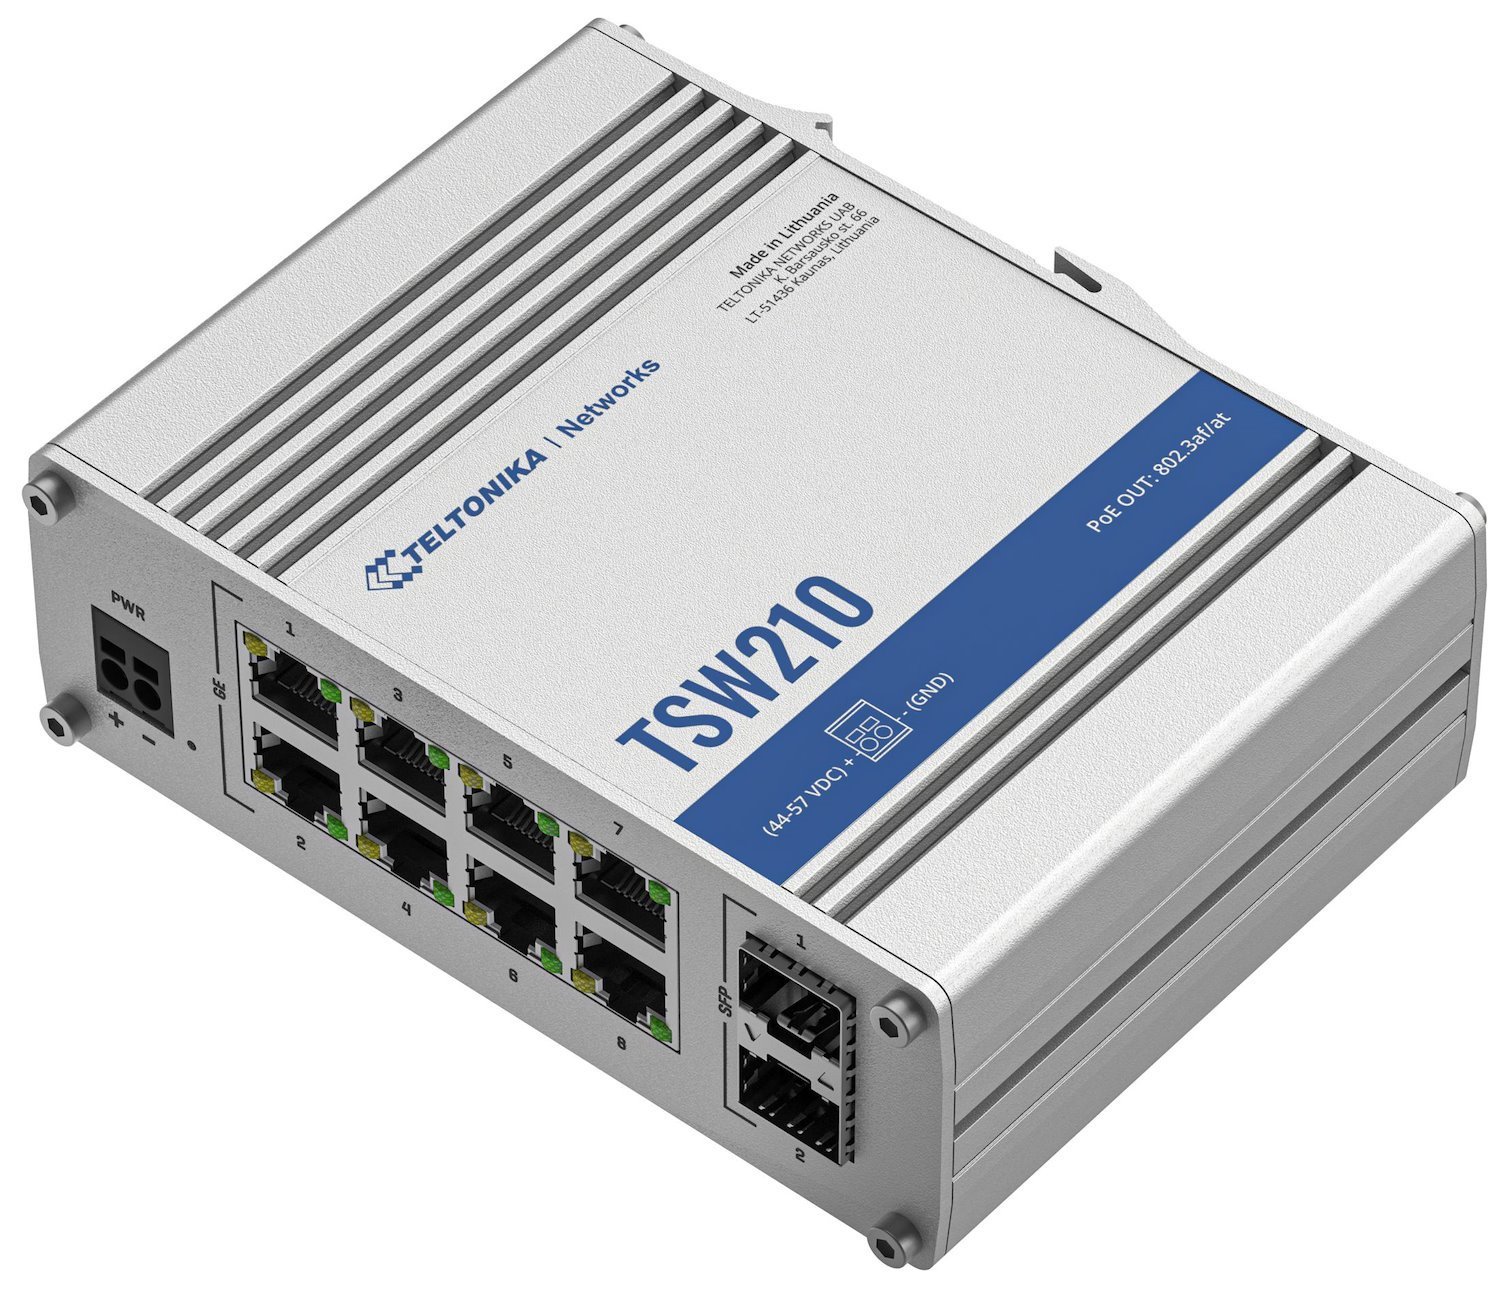 Teltonika TSW210 Network Switch Unmanaged Gigabit Ethernet [10/100/1000] Aluminium (Teltonika Unmanaged Industrial Network Switch - TSW210 [No Psu])